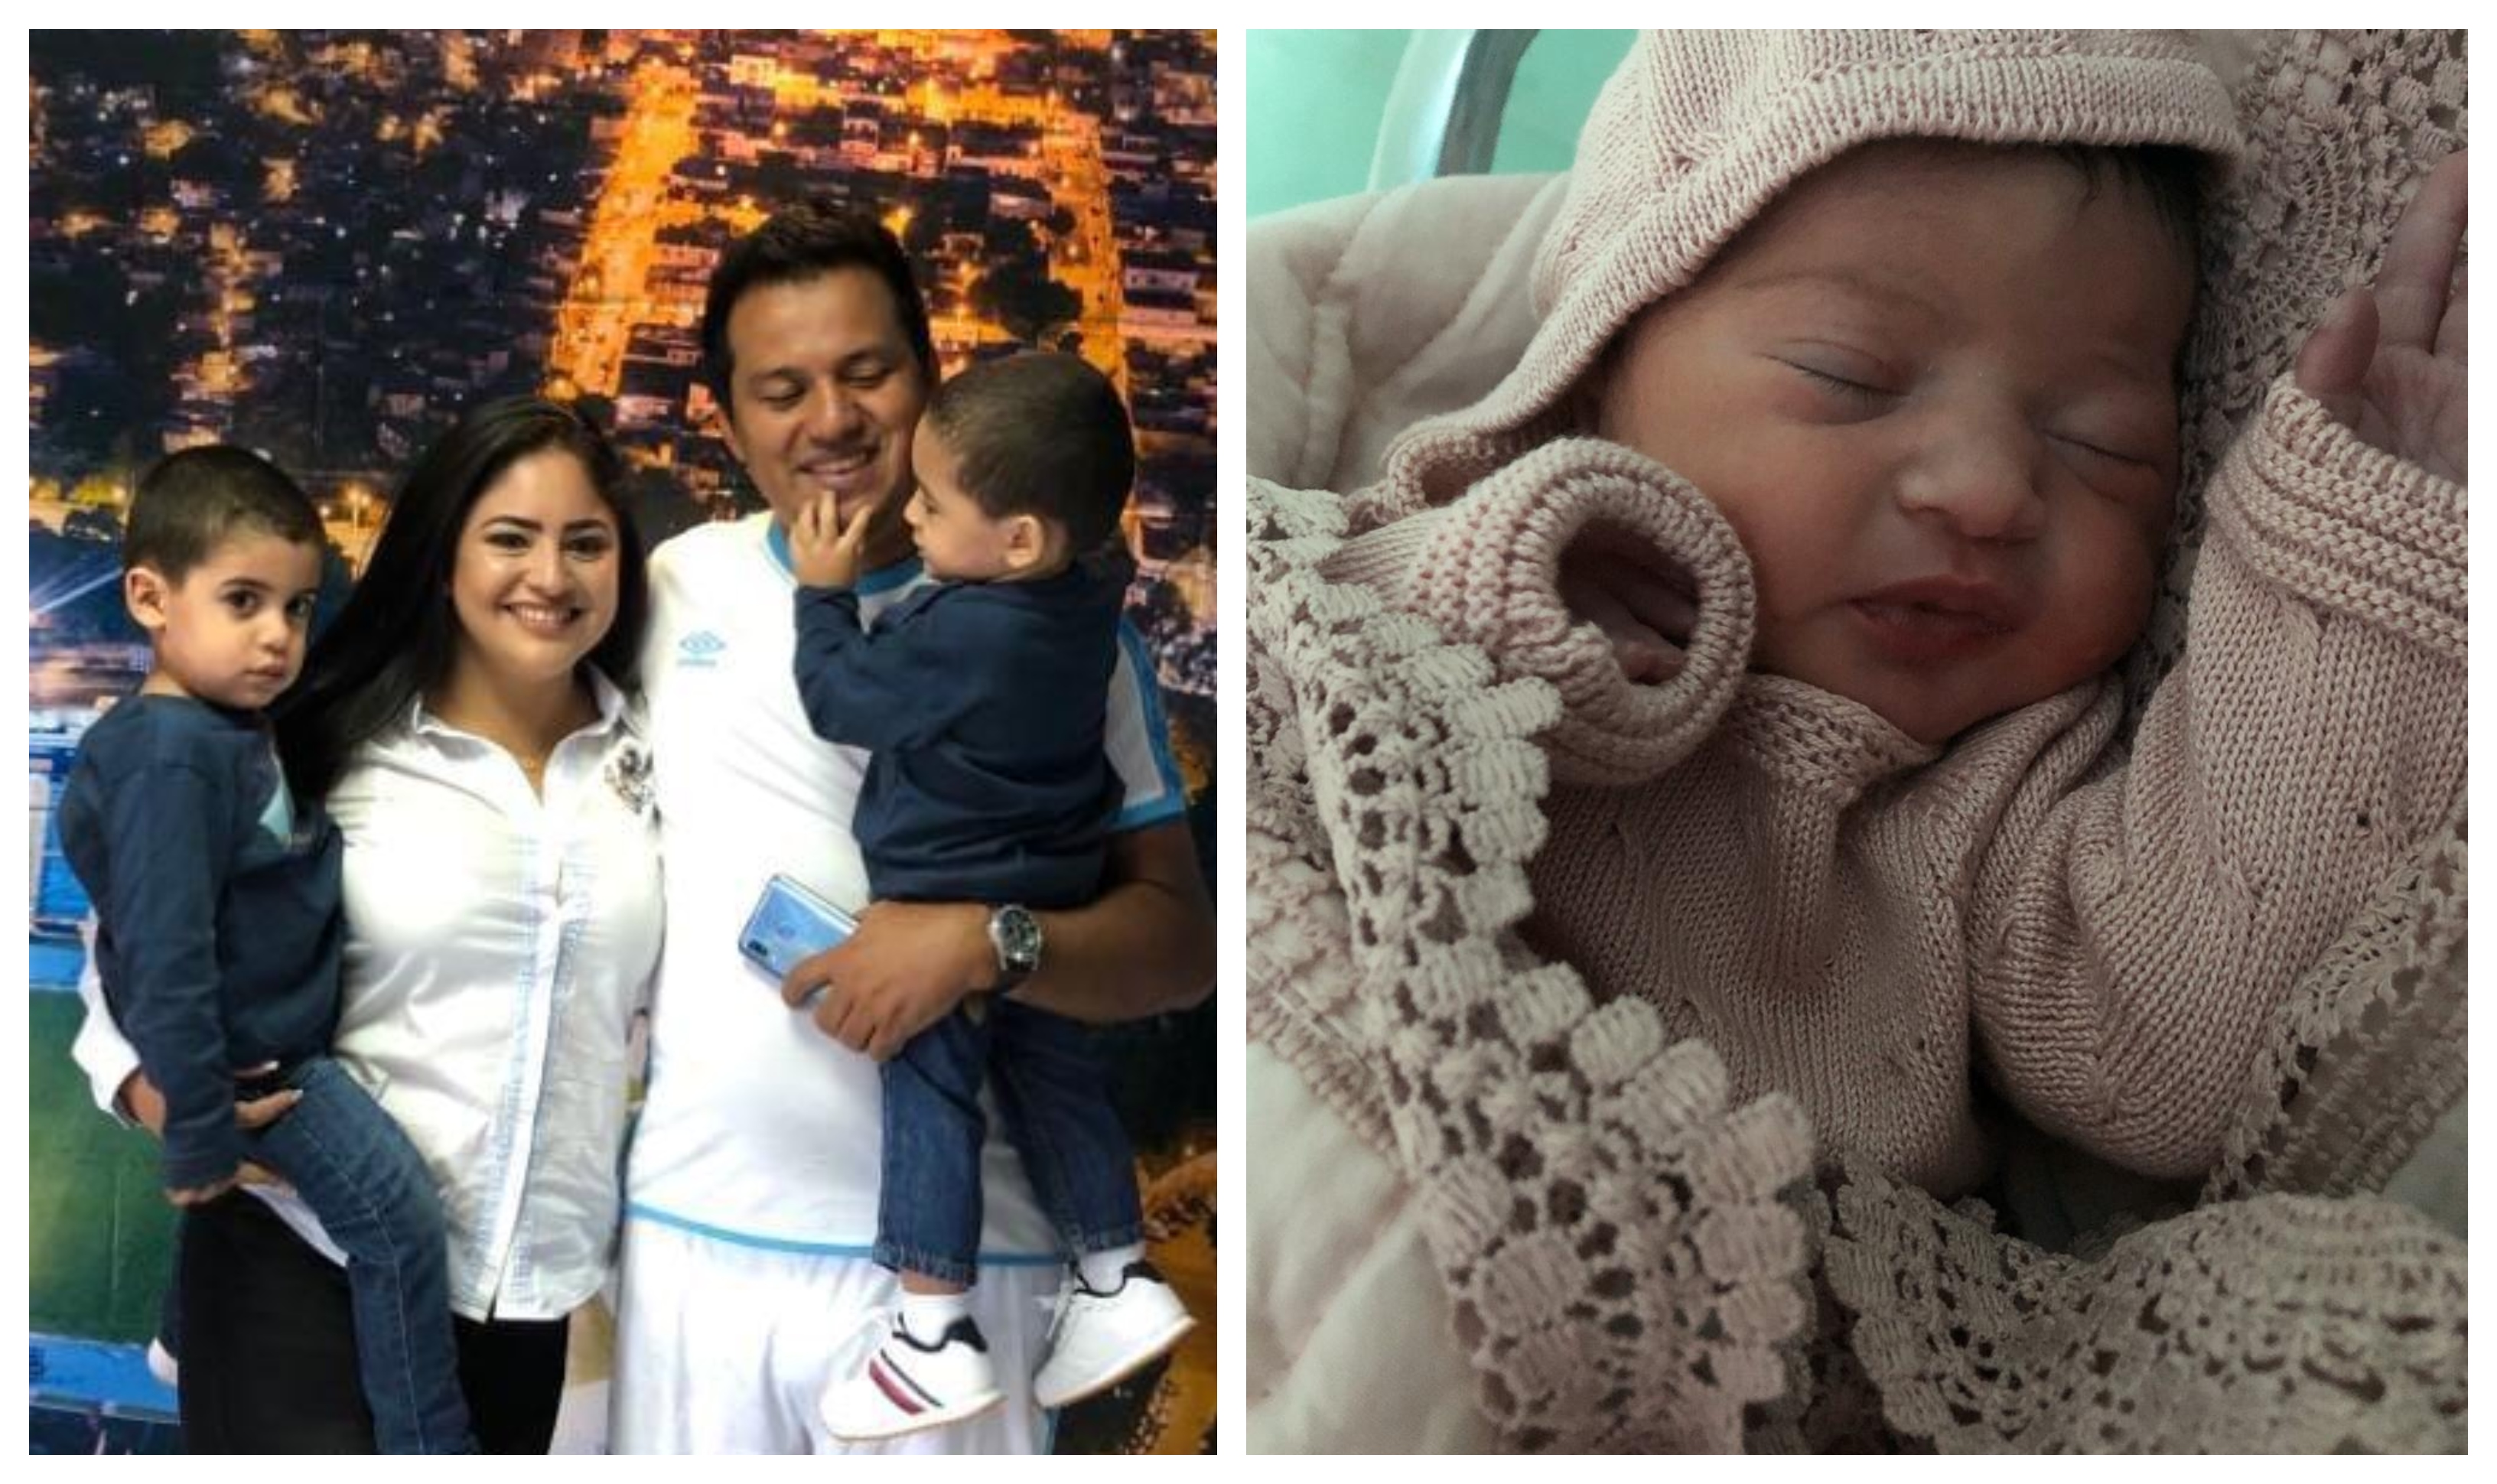 Amarini Villatoro y su esposa le dieron la bienvenida a su hija Gianna Alejandra. (Foto Prensa Libre: Cortesía Amarini Villatoro)